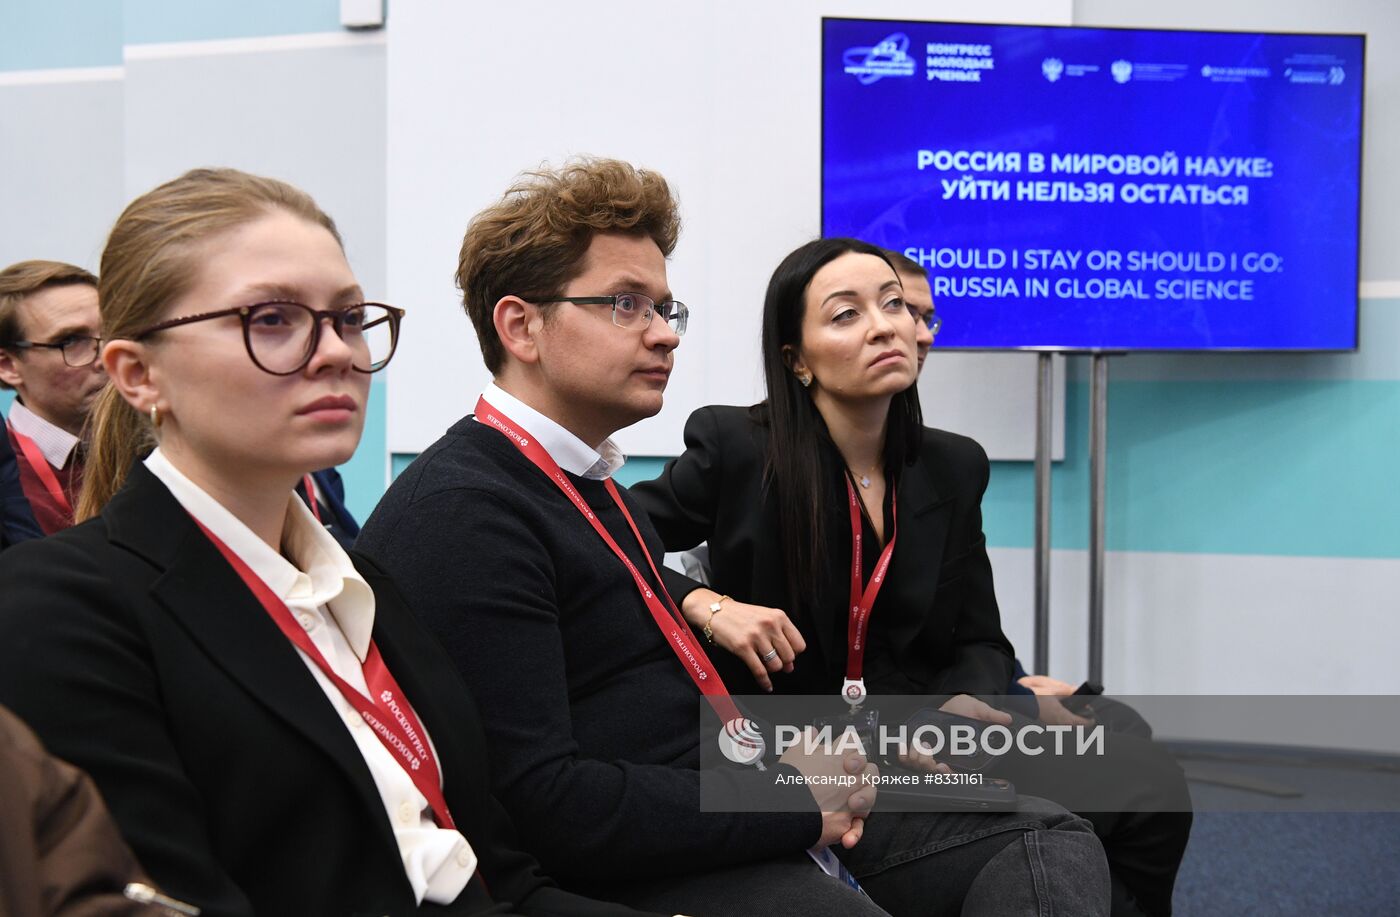 II КМУ-2022. Россия в мировой науке: уйти нельзя остаться